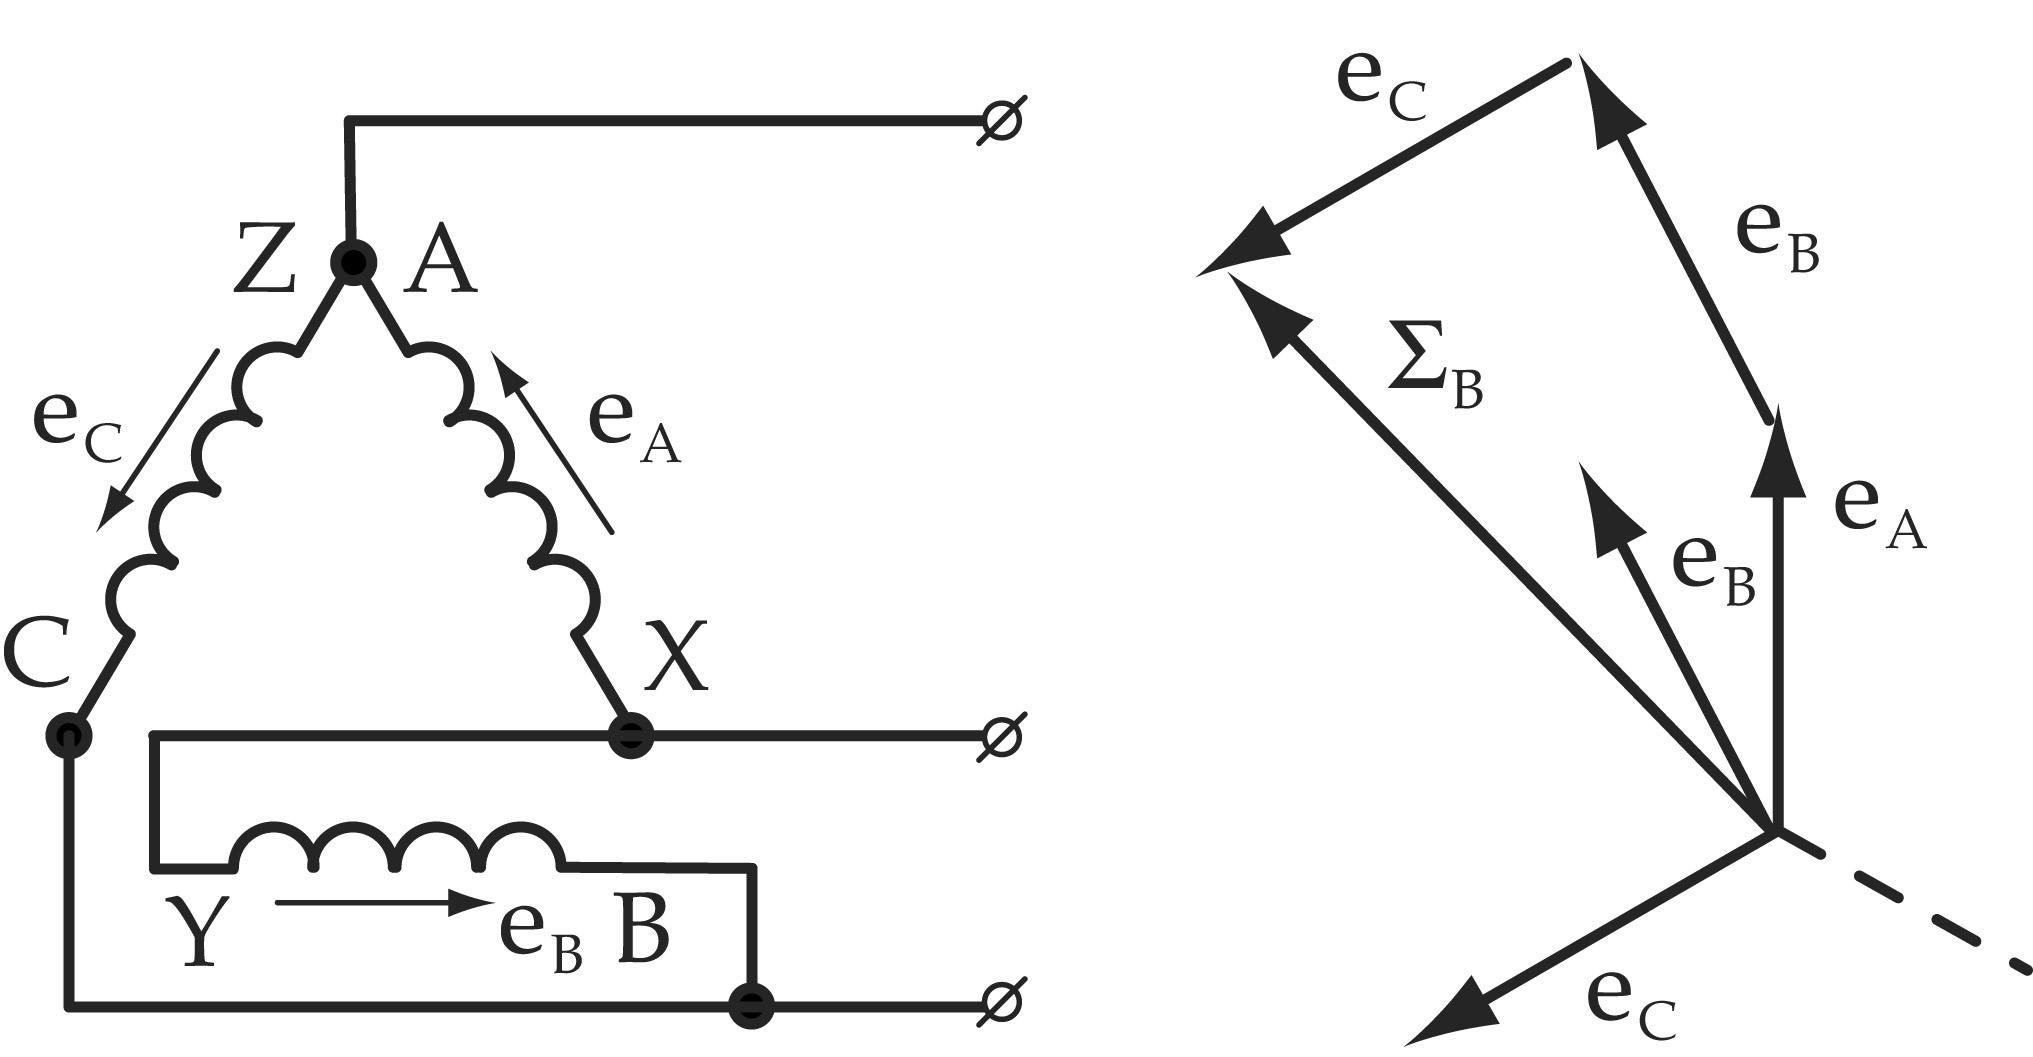 Соединение обмоток трехфазного генератора. Схема соединения трехфазного генератора треугольником. Соединение обмоток трехфазного генератора треугольником. Соединение обмоток генератора треугольником схема цепи. Соединение обмоток генератора звездой и треугольником.